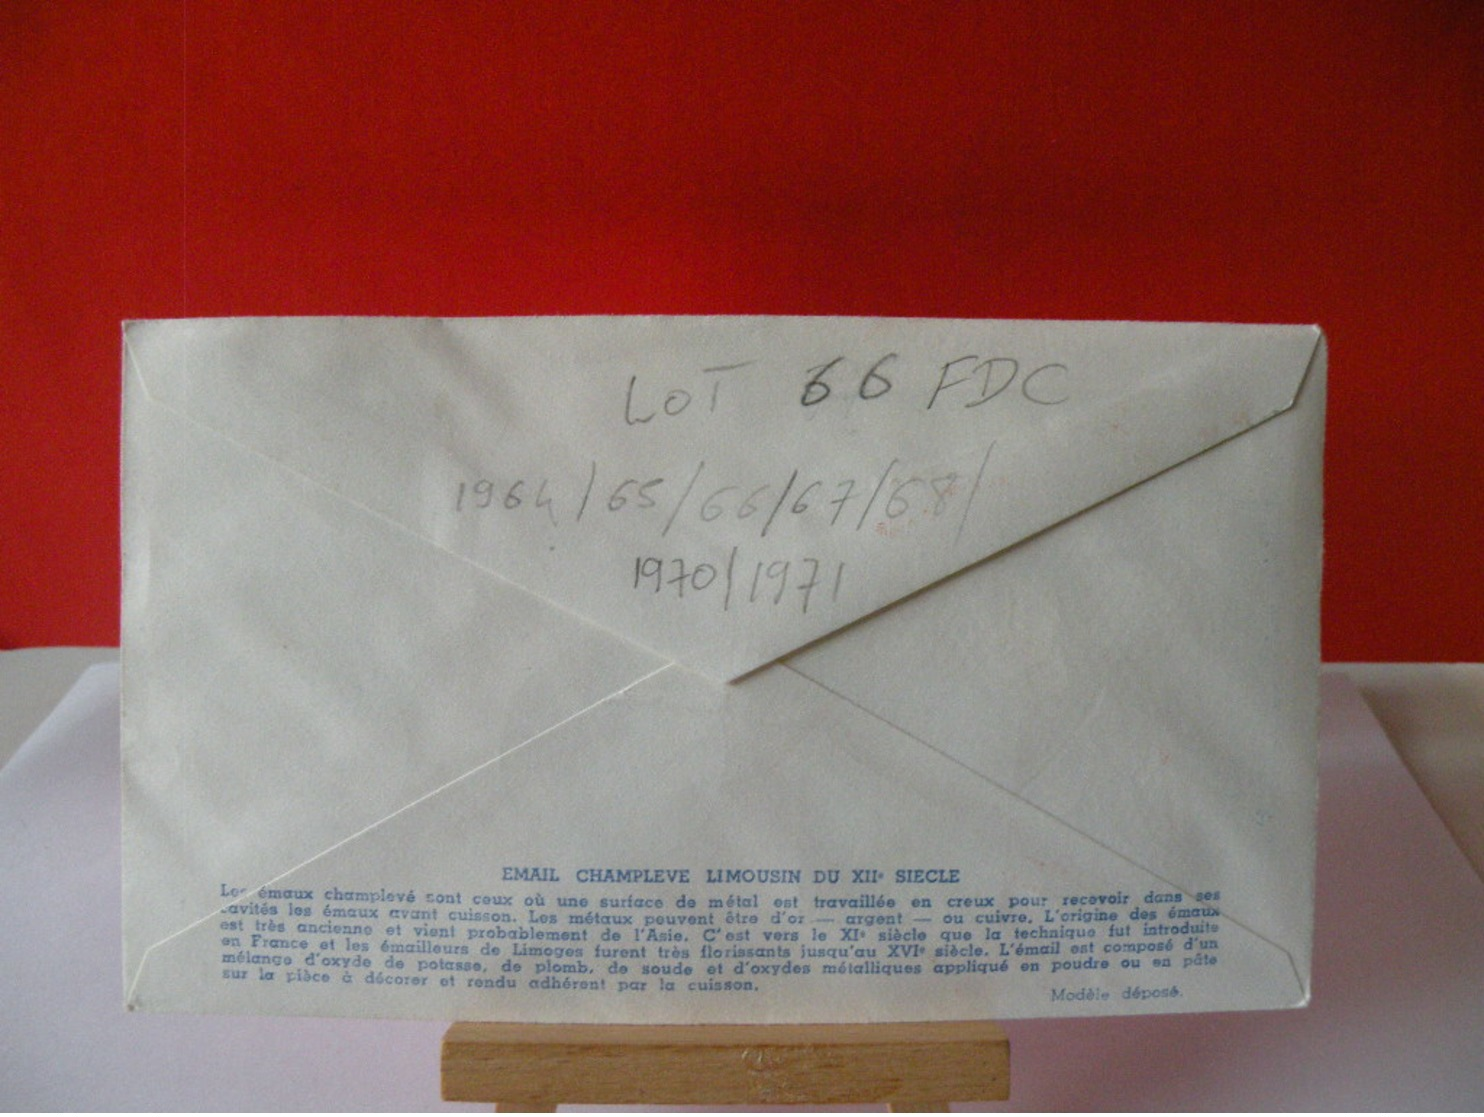 Lot de 66 FDC 1 jour 1964-65-66-67-68-1970-71 - France